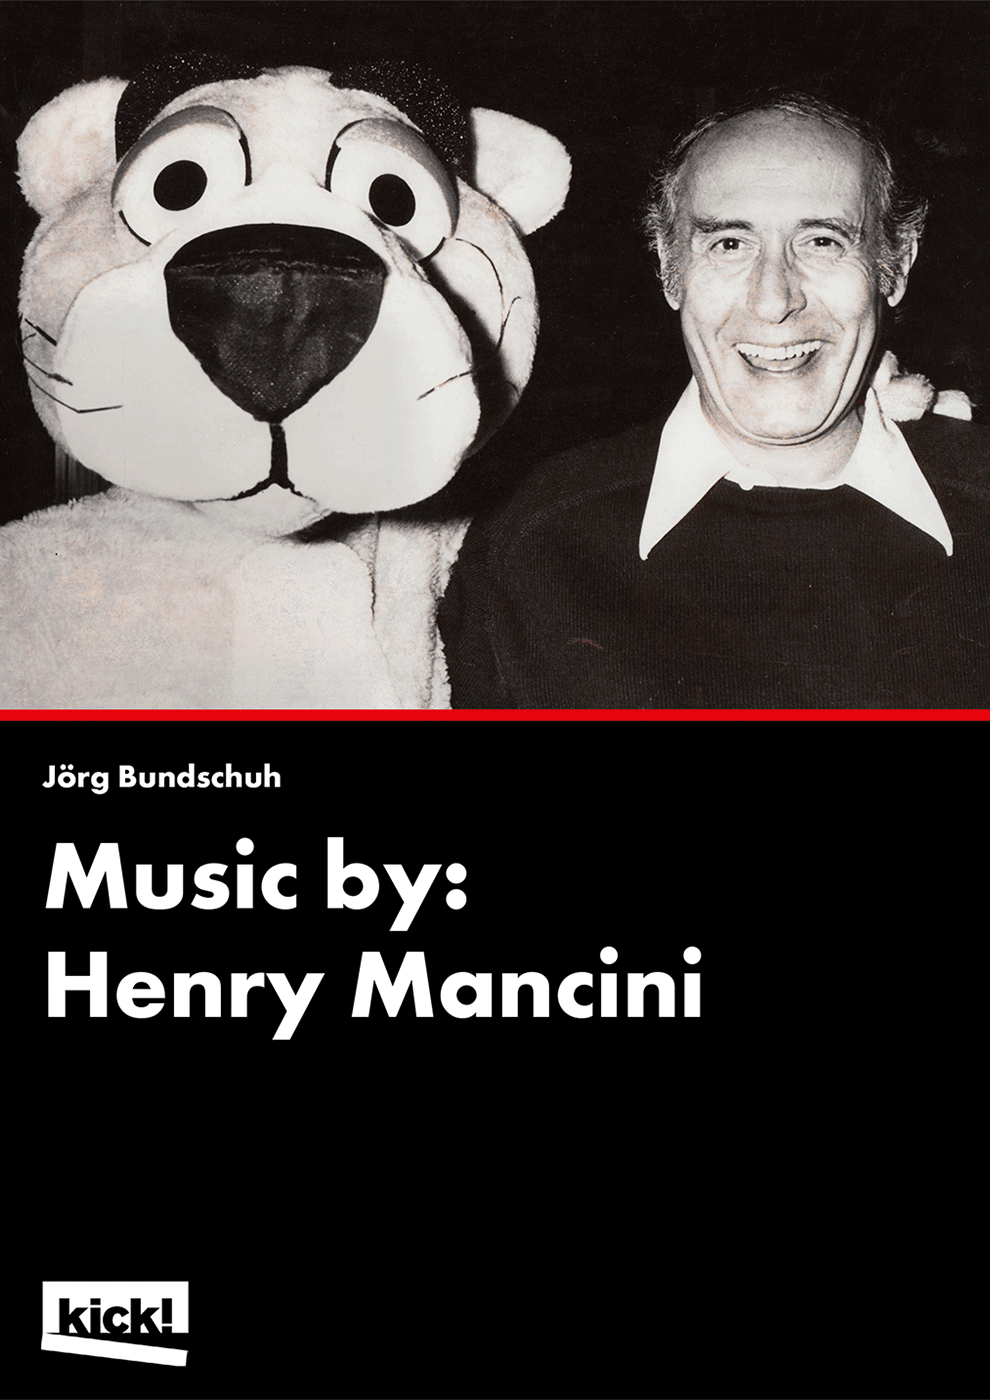 MUSIC BY: HENRY MANCINI Ein Film von Jörg Bundschuh